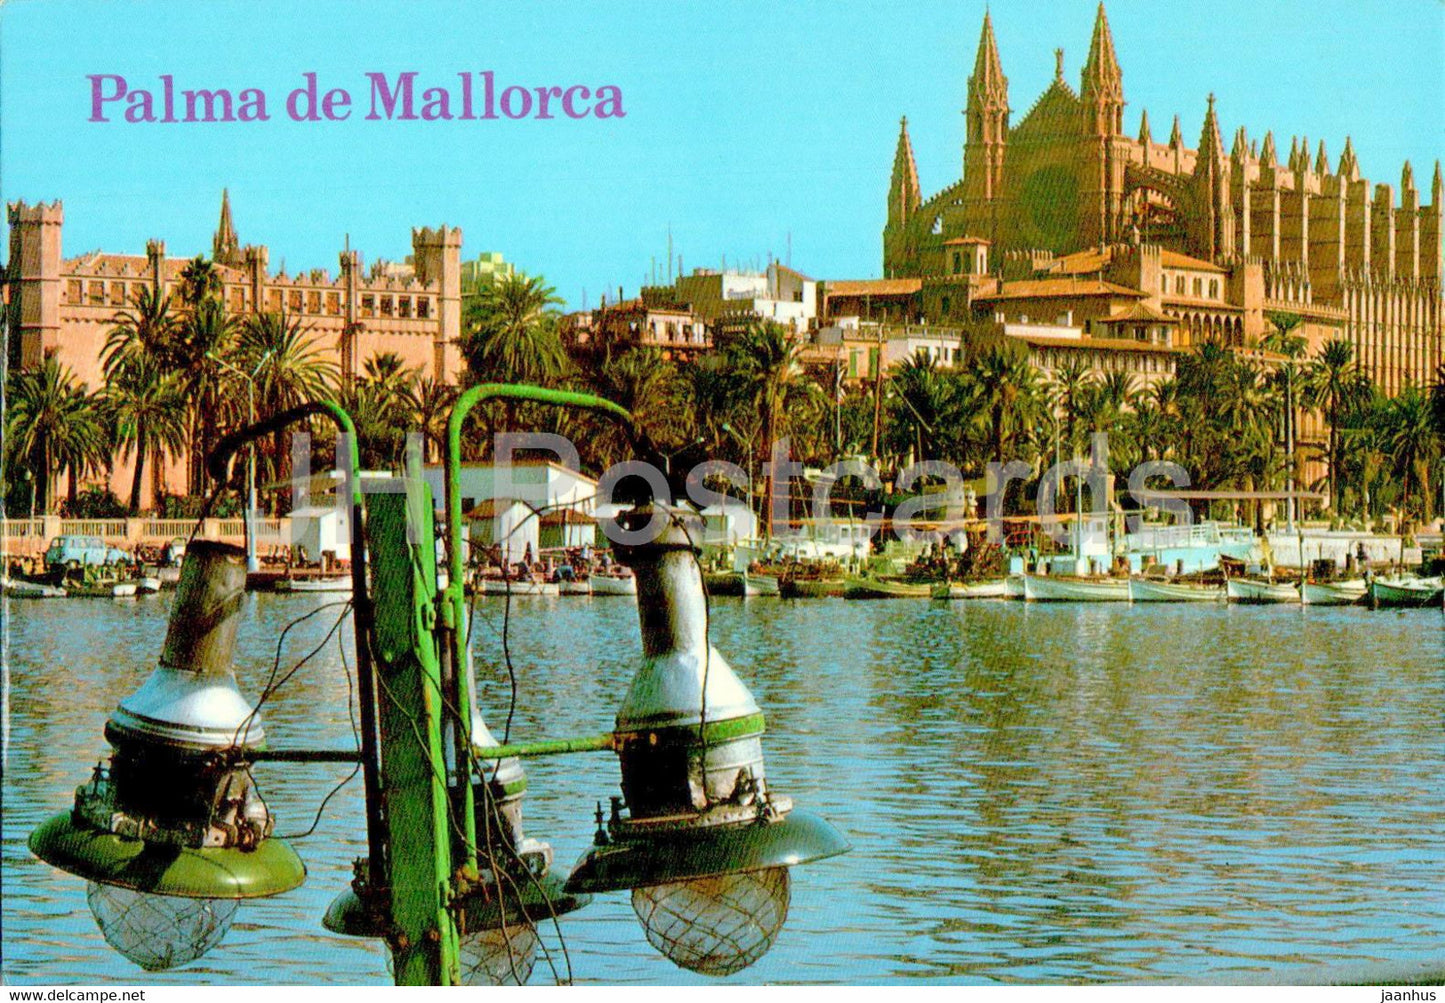 Palma de Mallorca - La Catedral y La Lonja - cathedral - Mallorca - 1168 - Spain - unused - JH Postcards